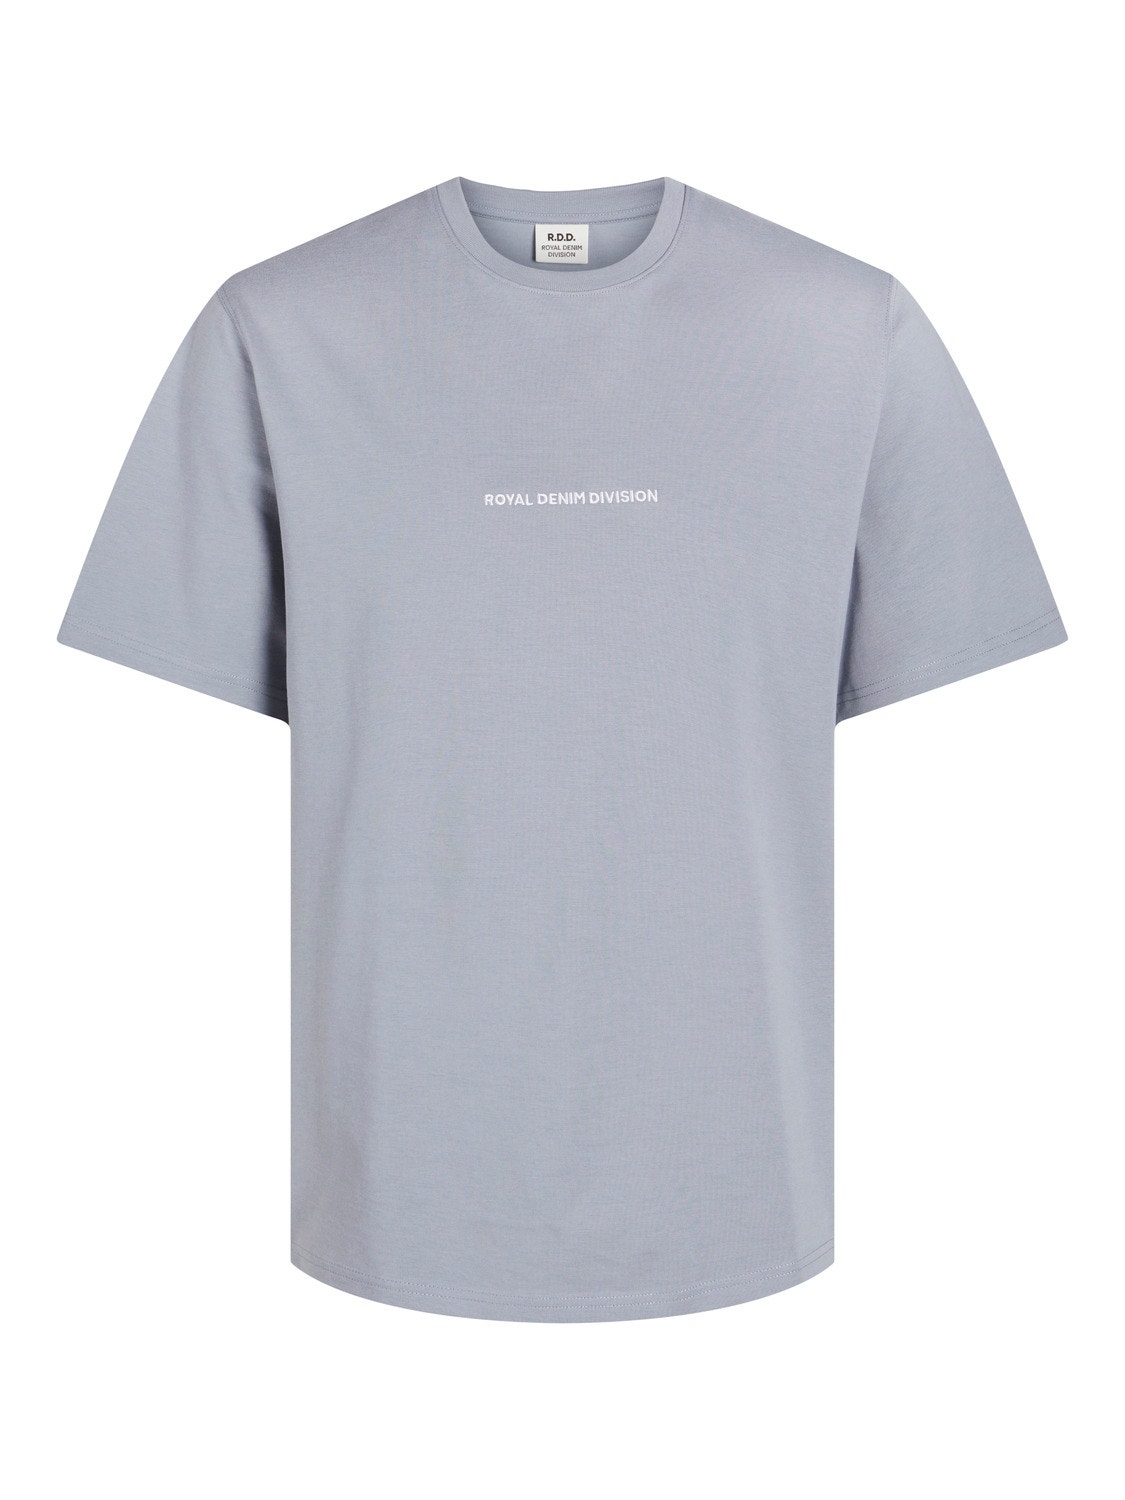 Jack & Jones Printed Crew neck T-shirt -Tradewinds - 12253392